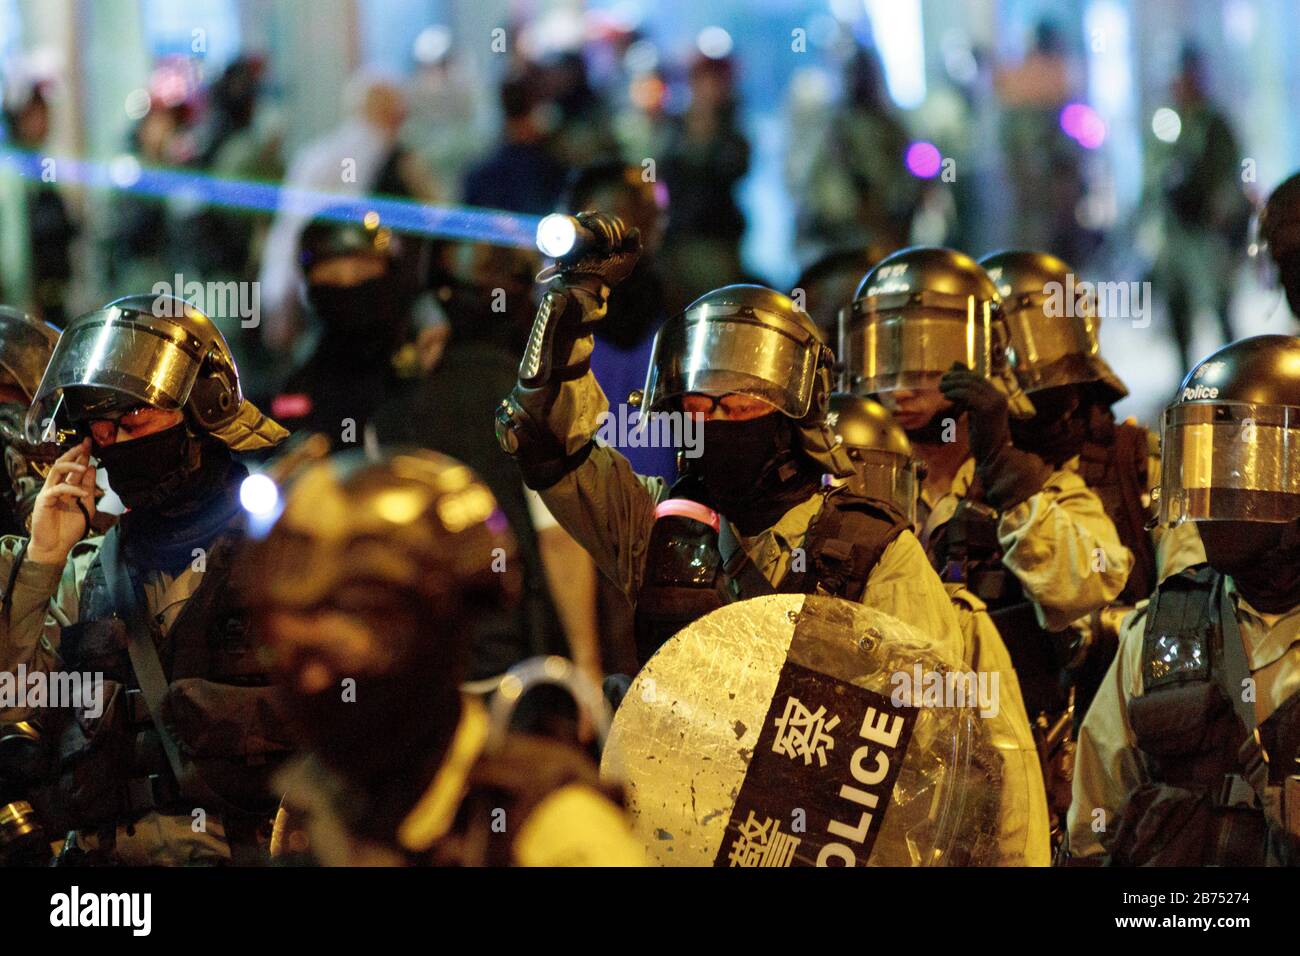 La police s'arrête avec les manifestants lors d'une manifestation officiellement approuvée. Des milliers de personnes se rallient pour la deuxième fois aux législateurs américains pour adopter une législation qui soutient le mouvement démocratique de Hong Kong. Banque D'Images